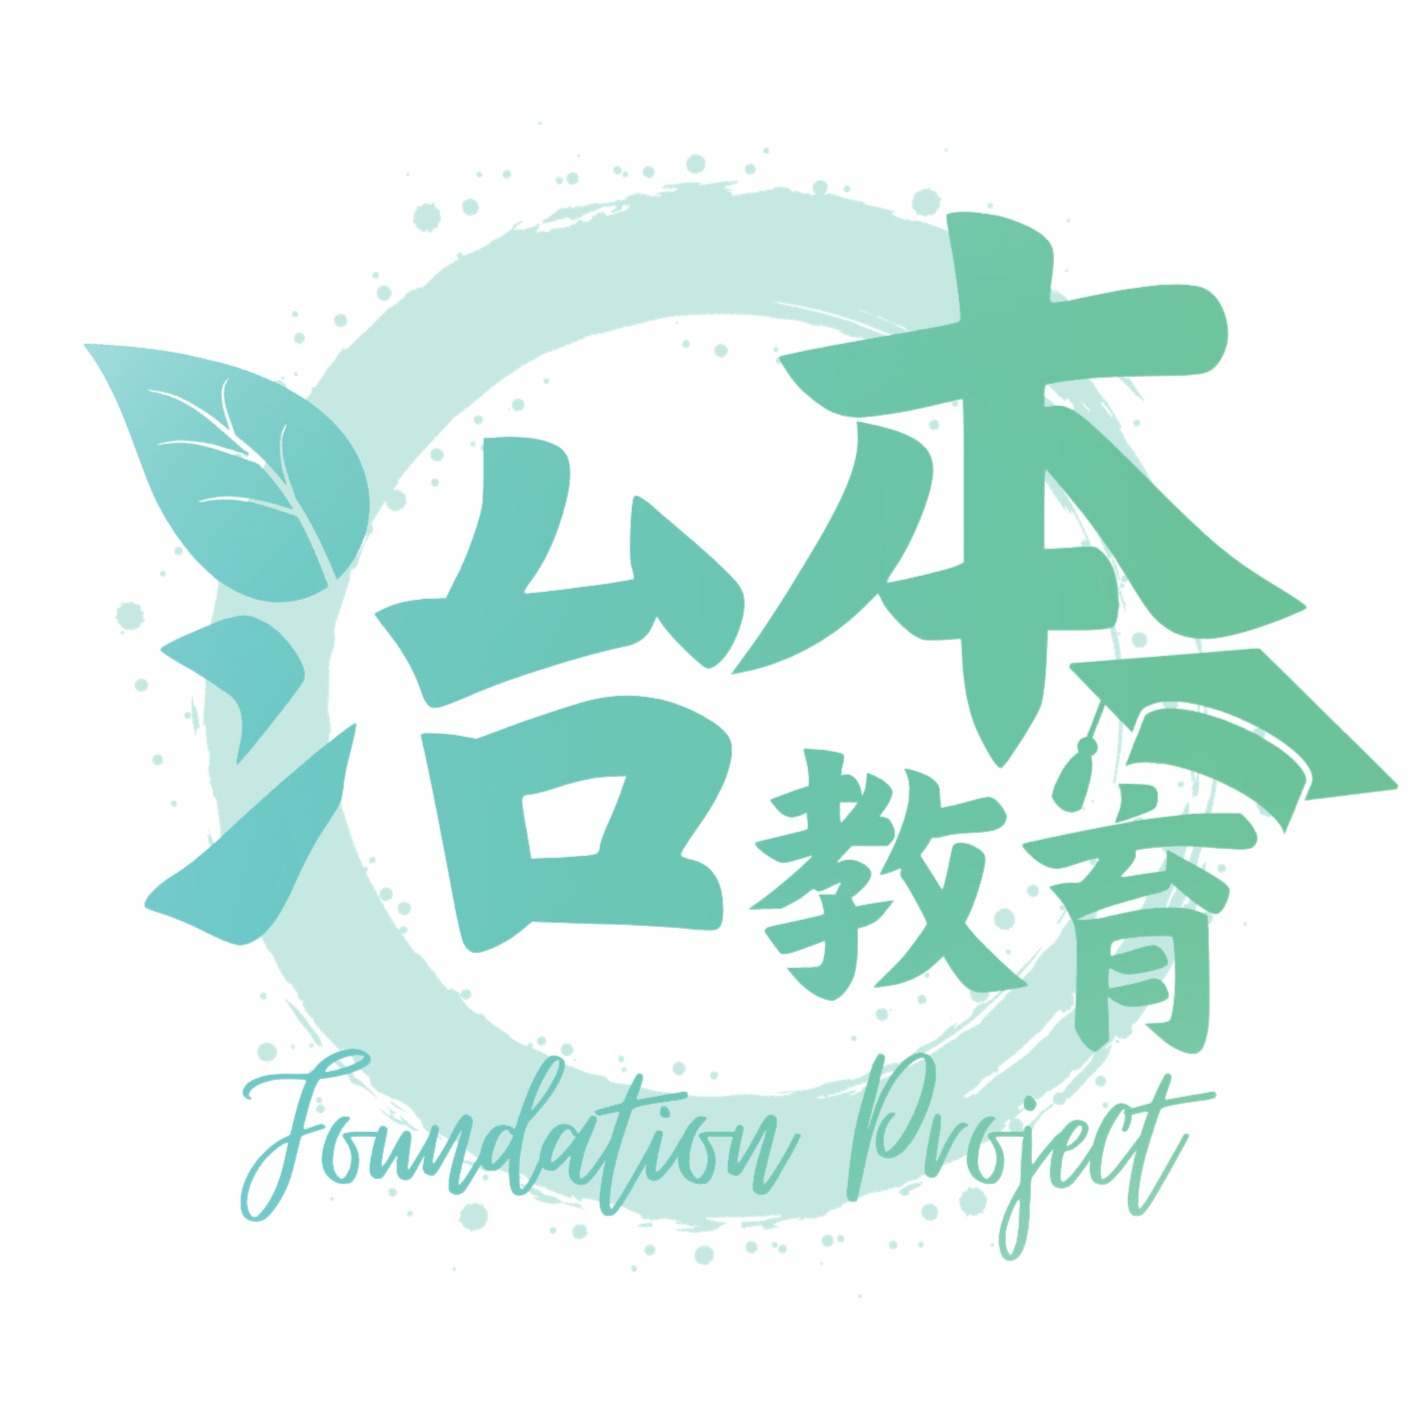 治本教育 Foundation Project